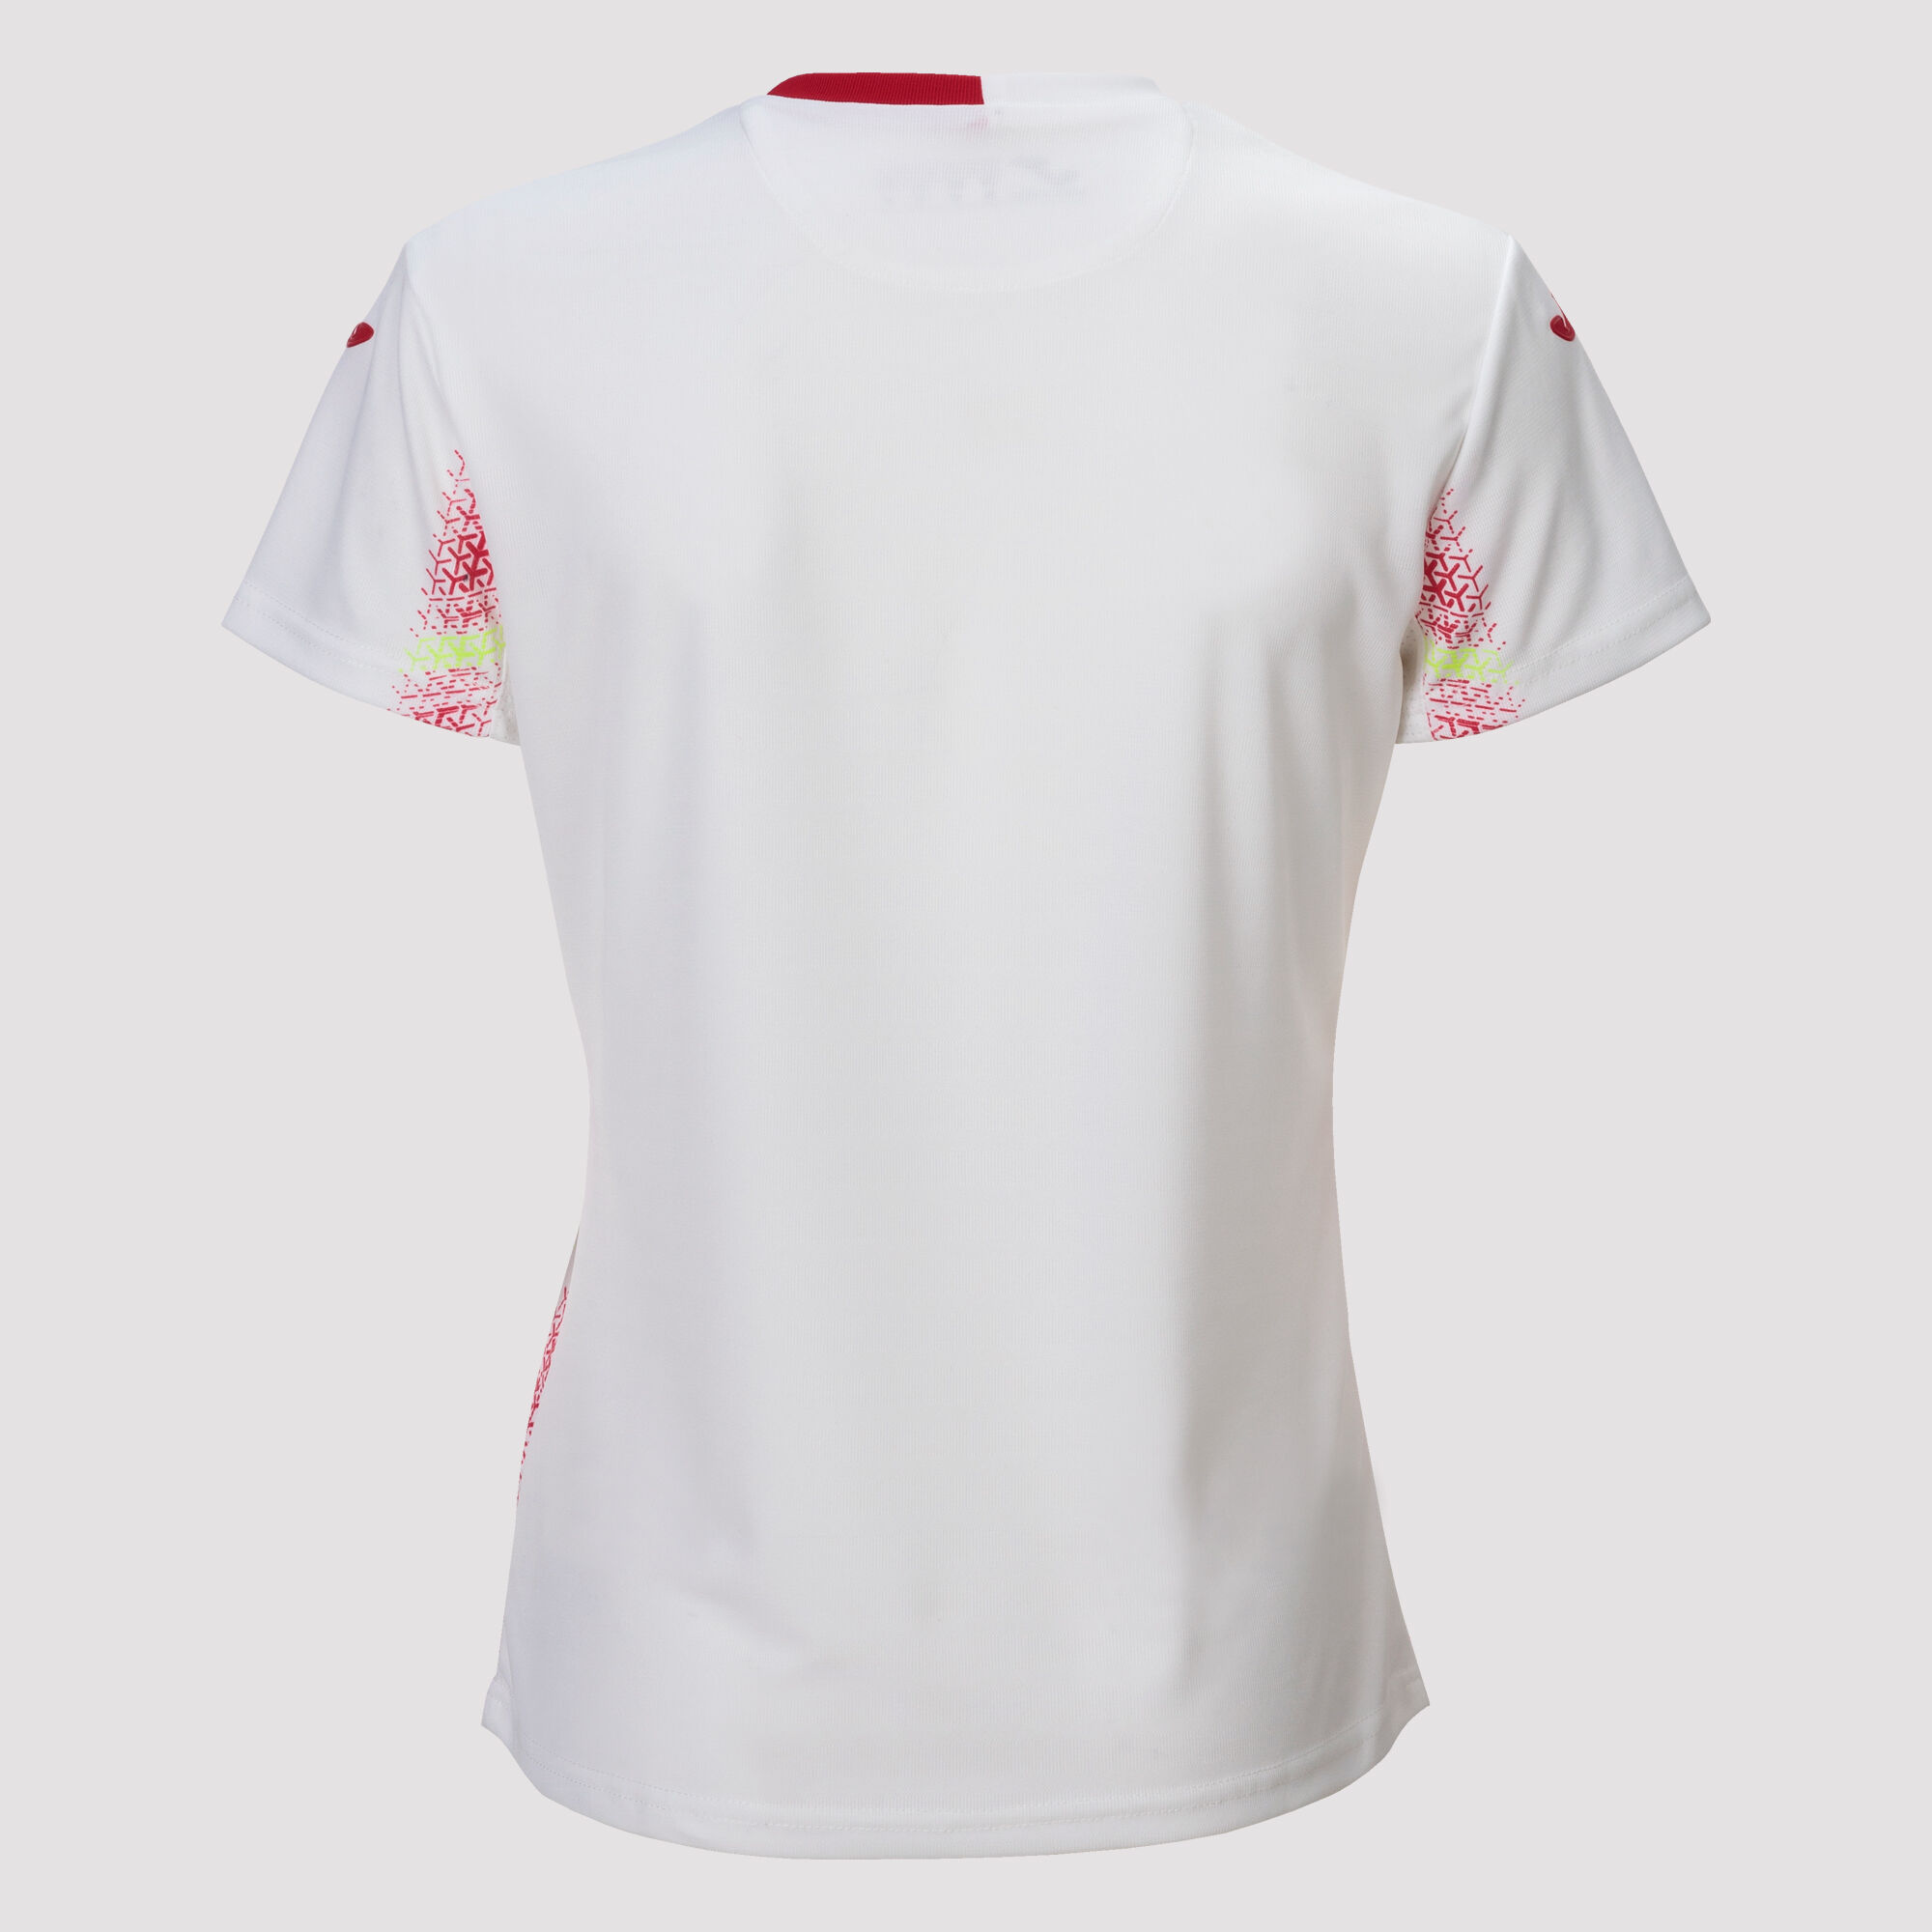 Camiseta manga corta 2ª equipación Selección Española Fútbol Sala